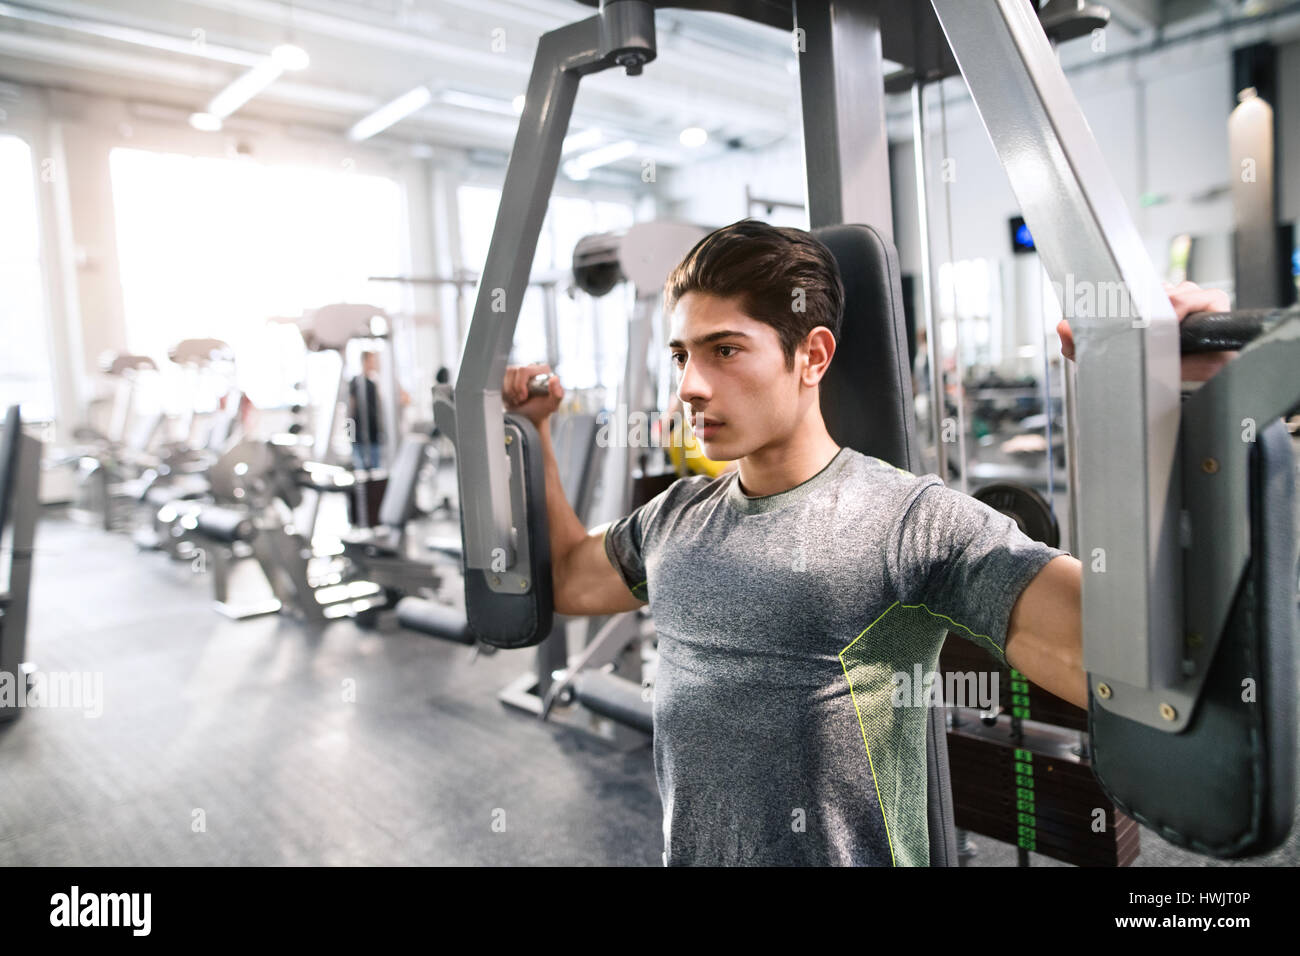 Junge spanische Fitness Mann im Fitness-Studio arbeitet über Schmetterling Fitnessgerät mit Gewichten, Muskeln Stockfoto